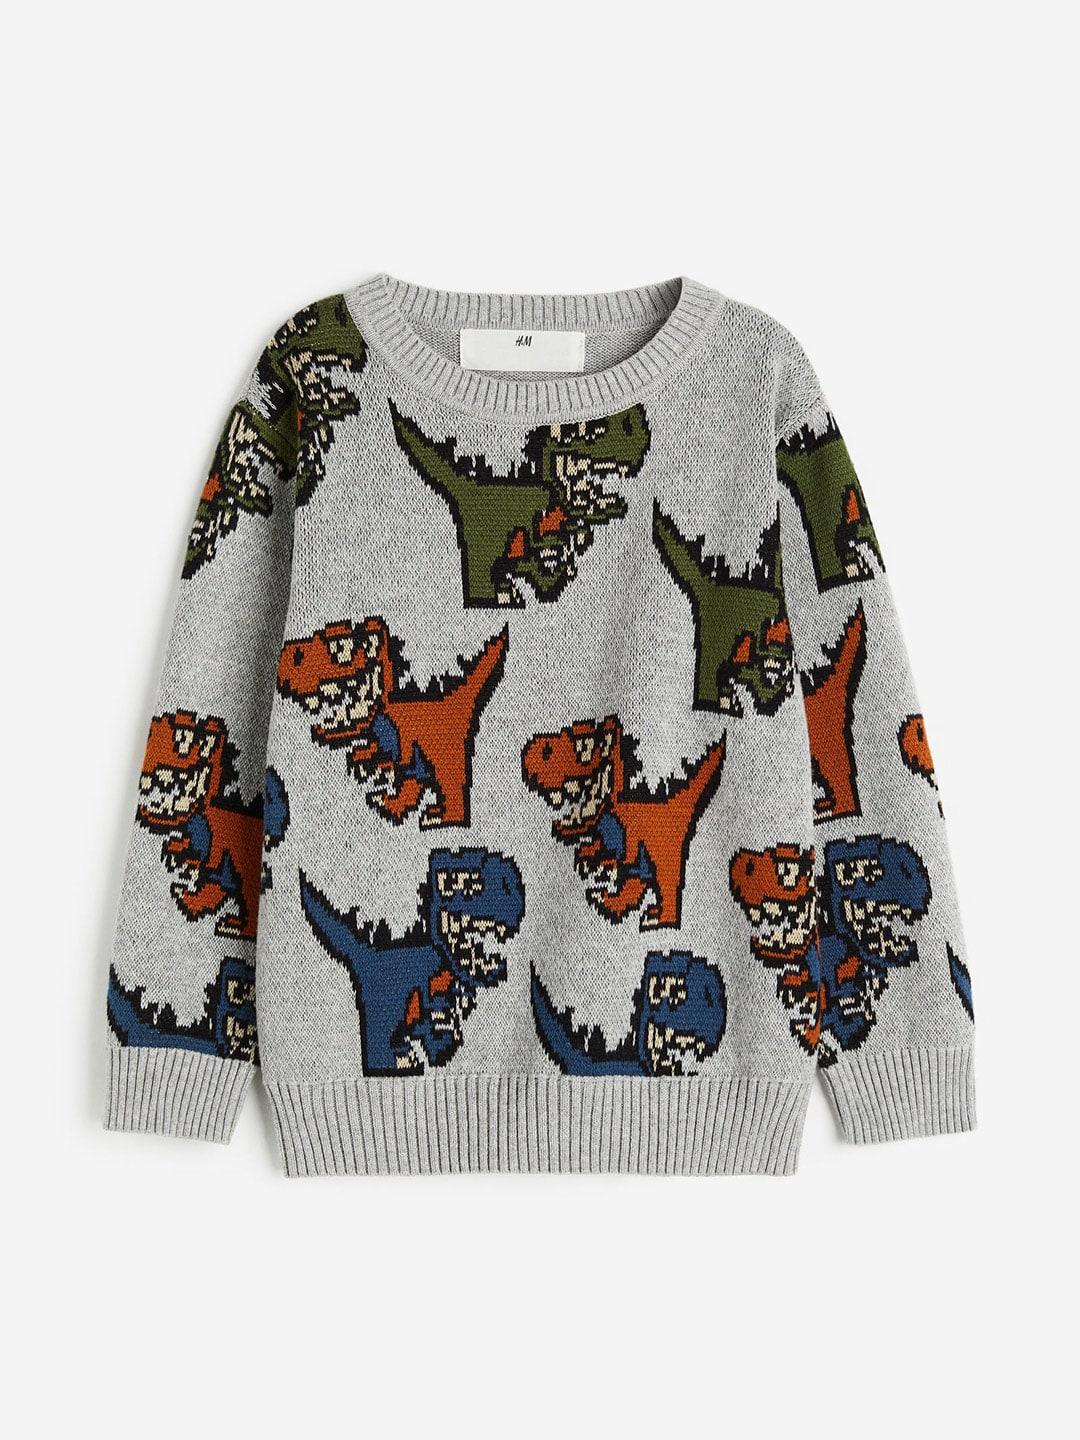 H&M Boys Jacquard-Knit Jumper Sweaters